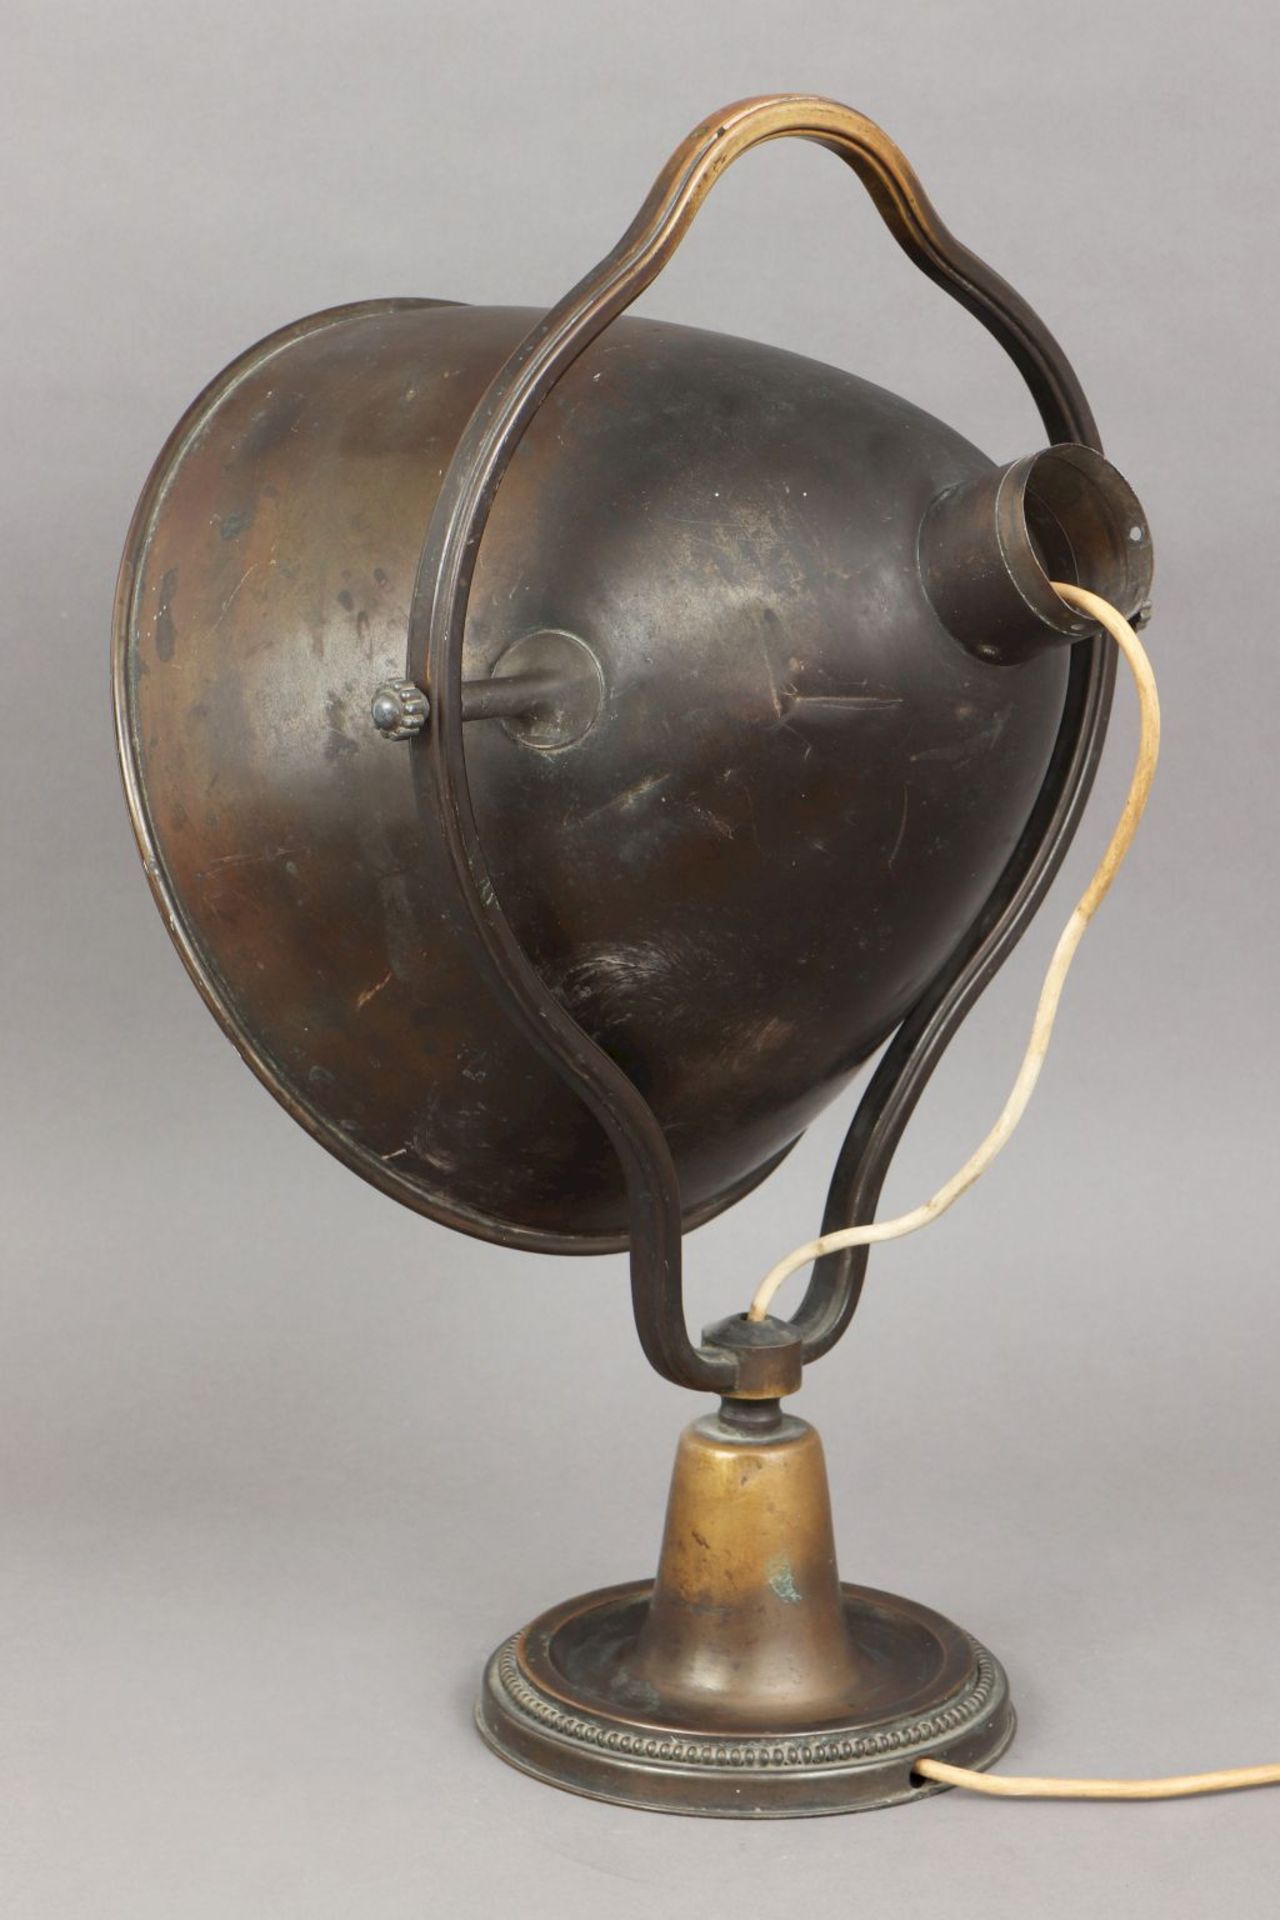 Tischlampe der 1930er JahreMessing, bronziert, trichterförmiger, beweglicher ¨Strahler¨-Schi - Bild 2 aus 4